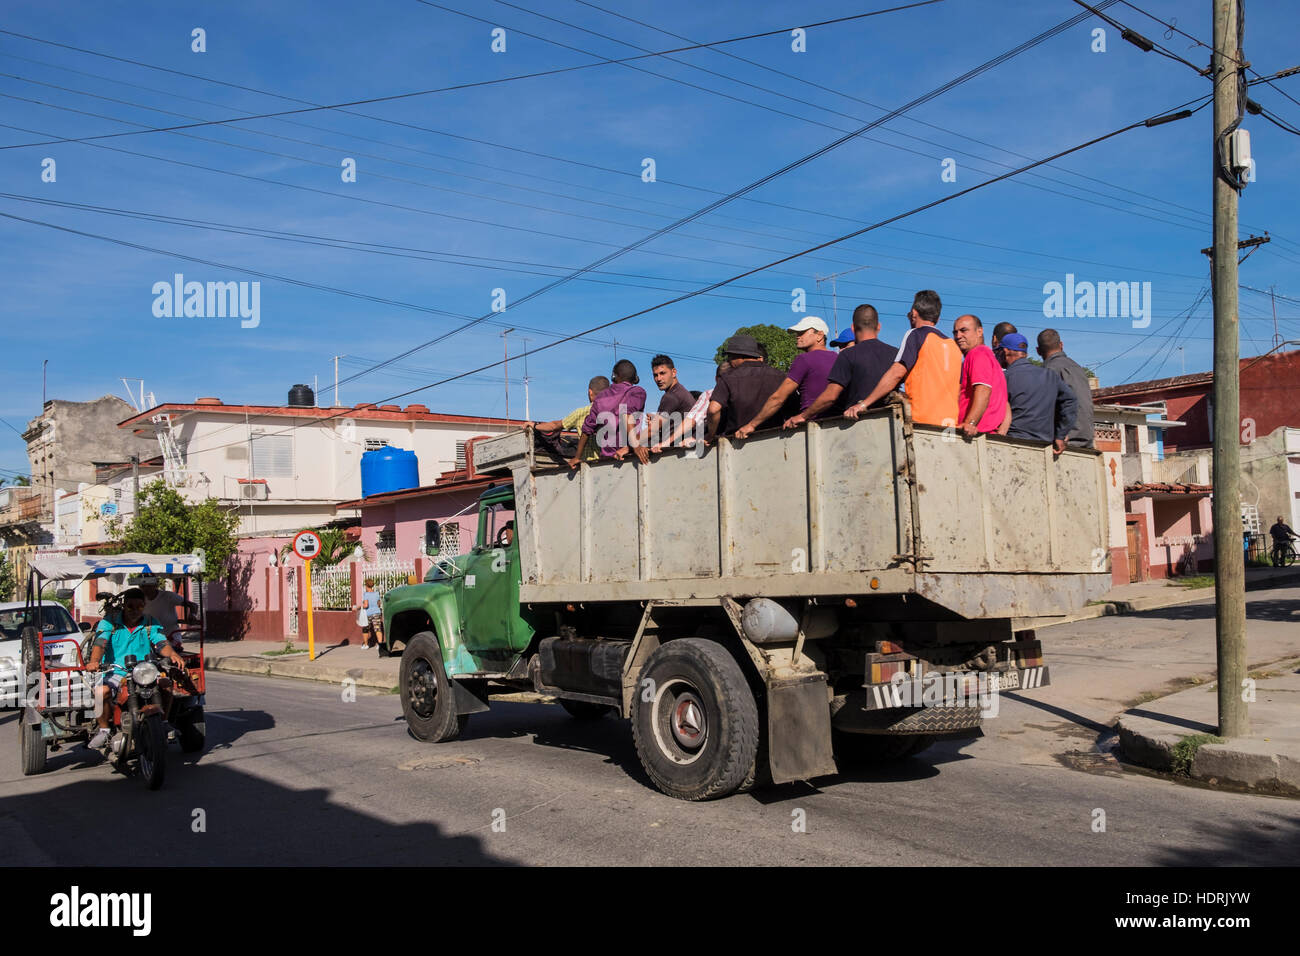 Gli uomini sulla parte posteriore di un camion per essere trasportati a lavorare, Cienfuegos, Cuba Foto Stock